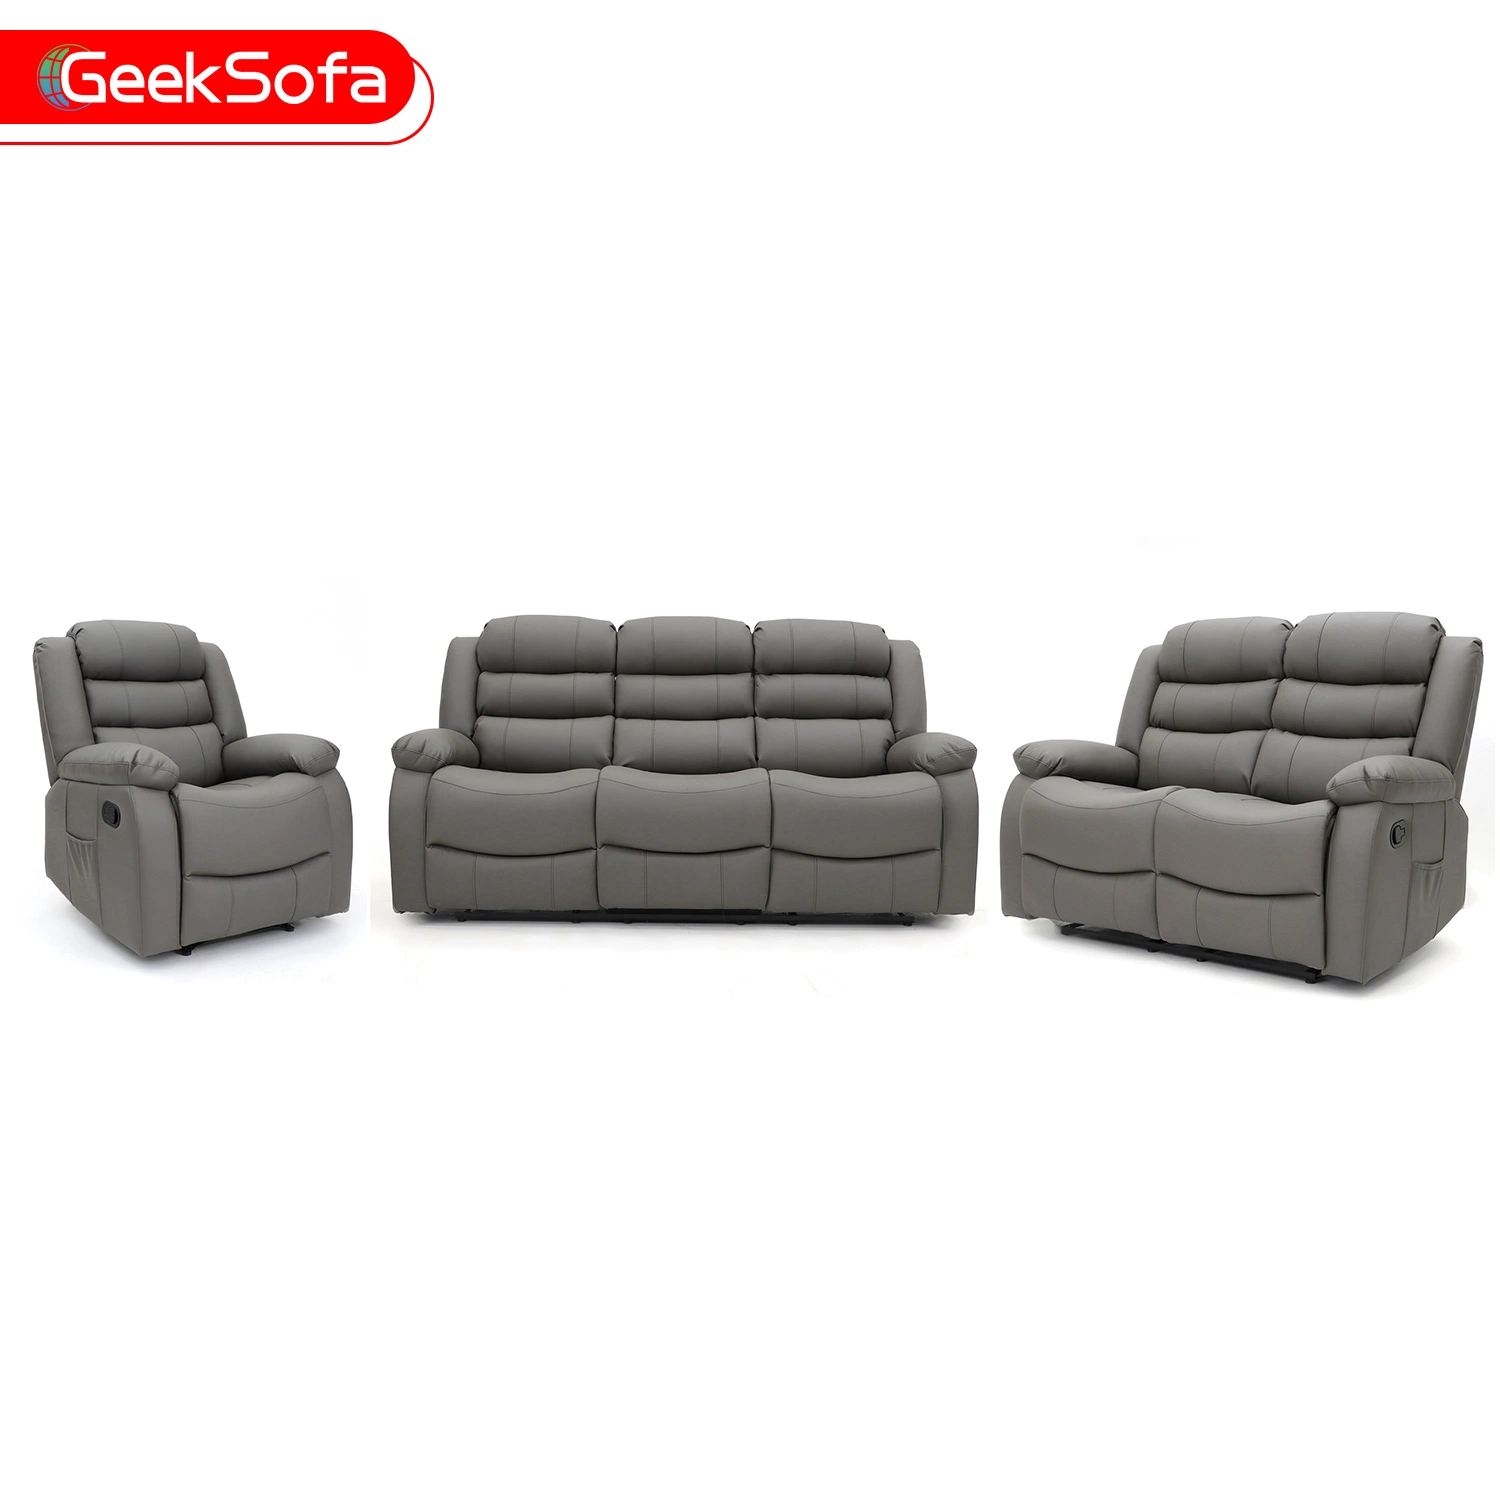 Geeksofa 3+2+1 moderno movimento de couro poltrona reclinável sofá com massagem e calor para a sala escura